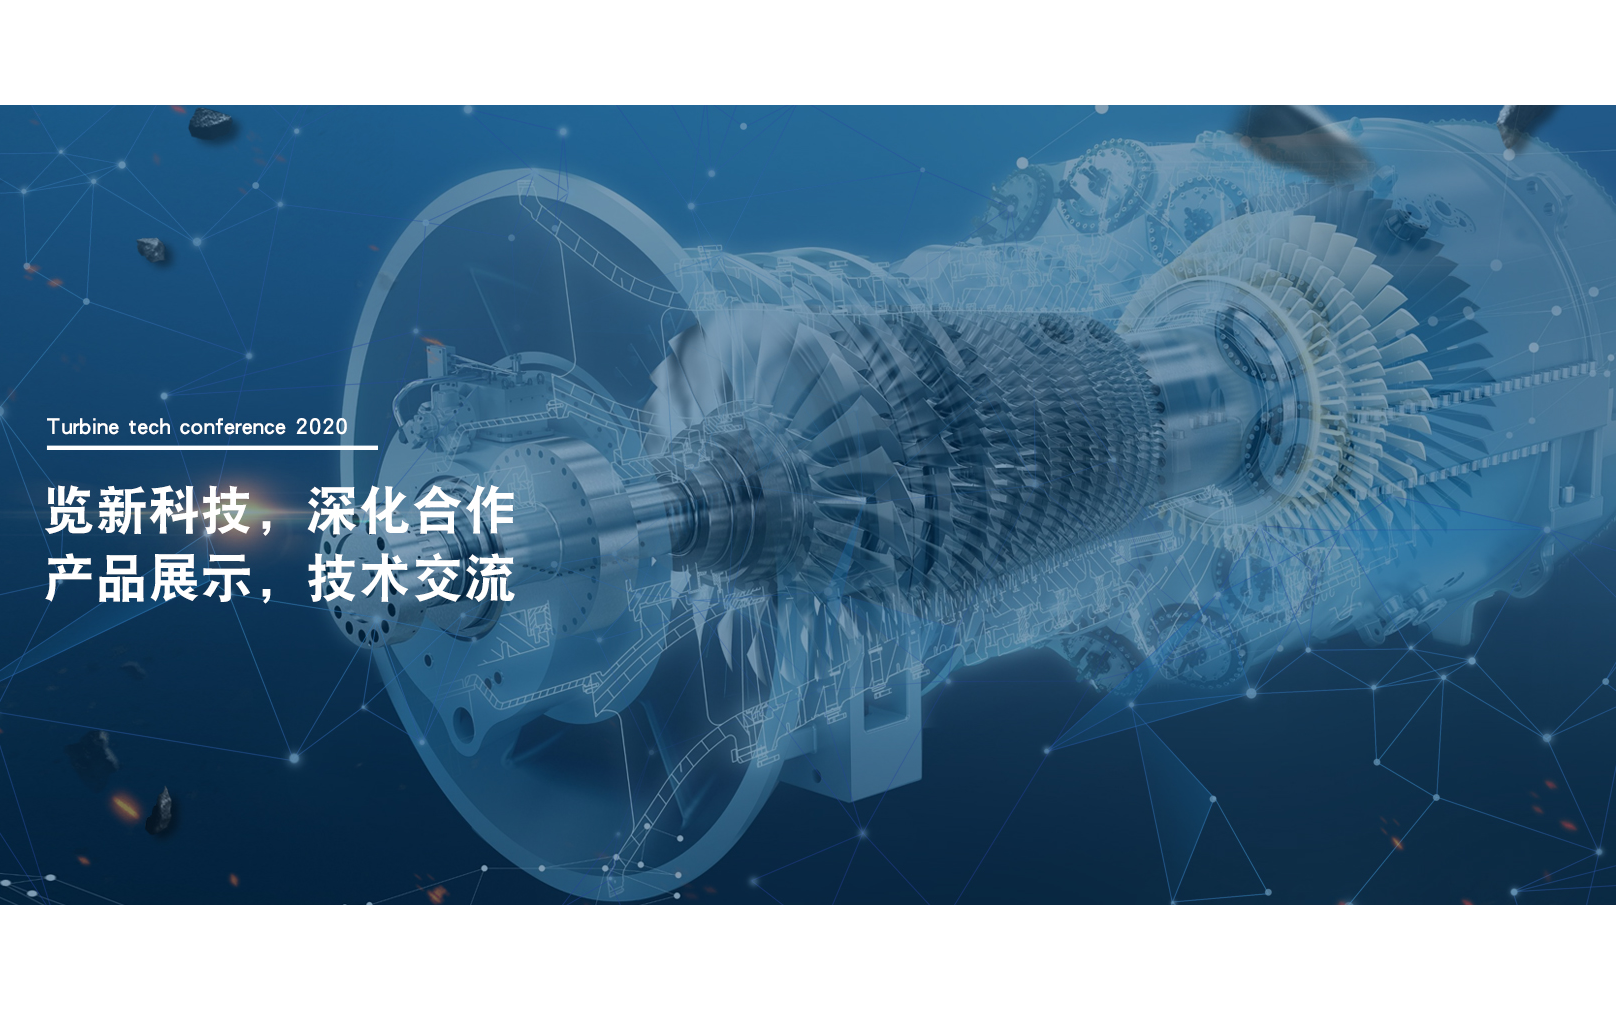 中国国际涡轮技术大会2020